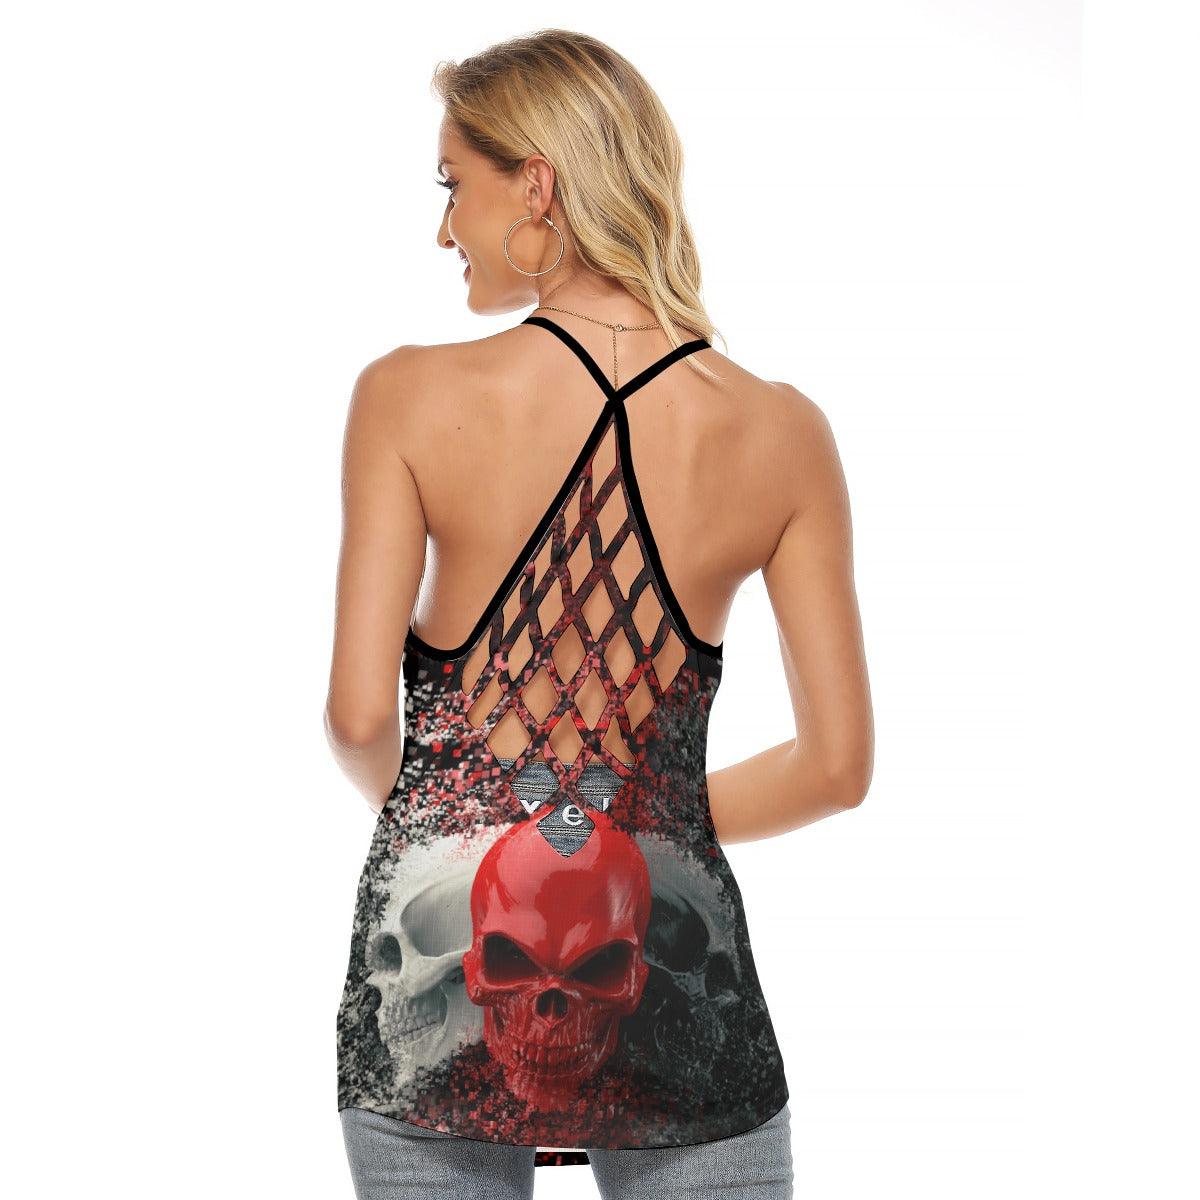 Three Skull Rose Criss-Cross Open Back Tank Top, Trending T-Shirt For Women - Wonder Skull